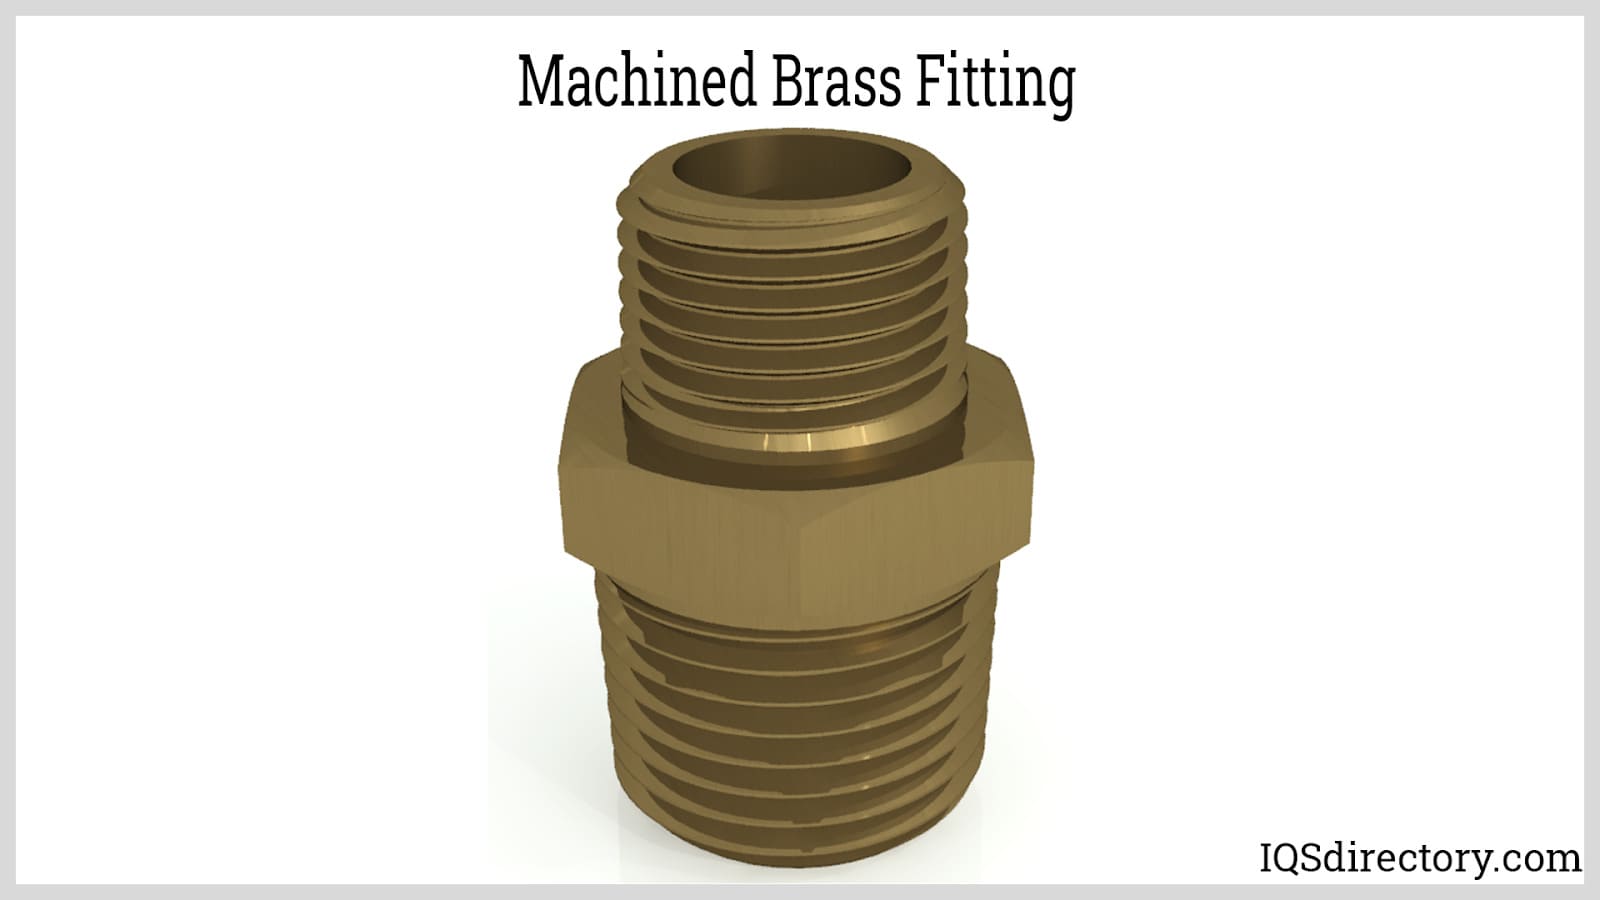 Machined Brass Fitting